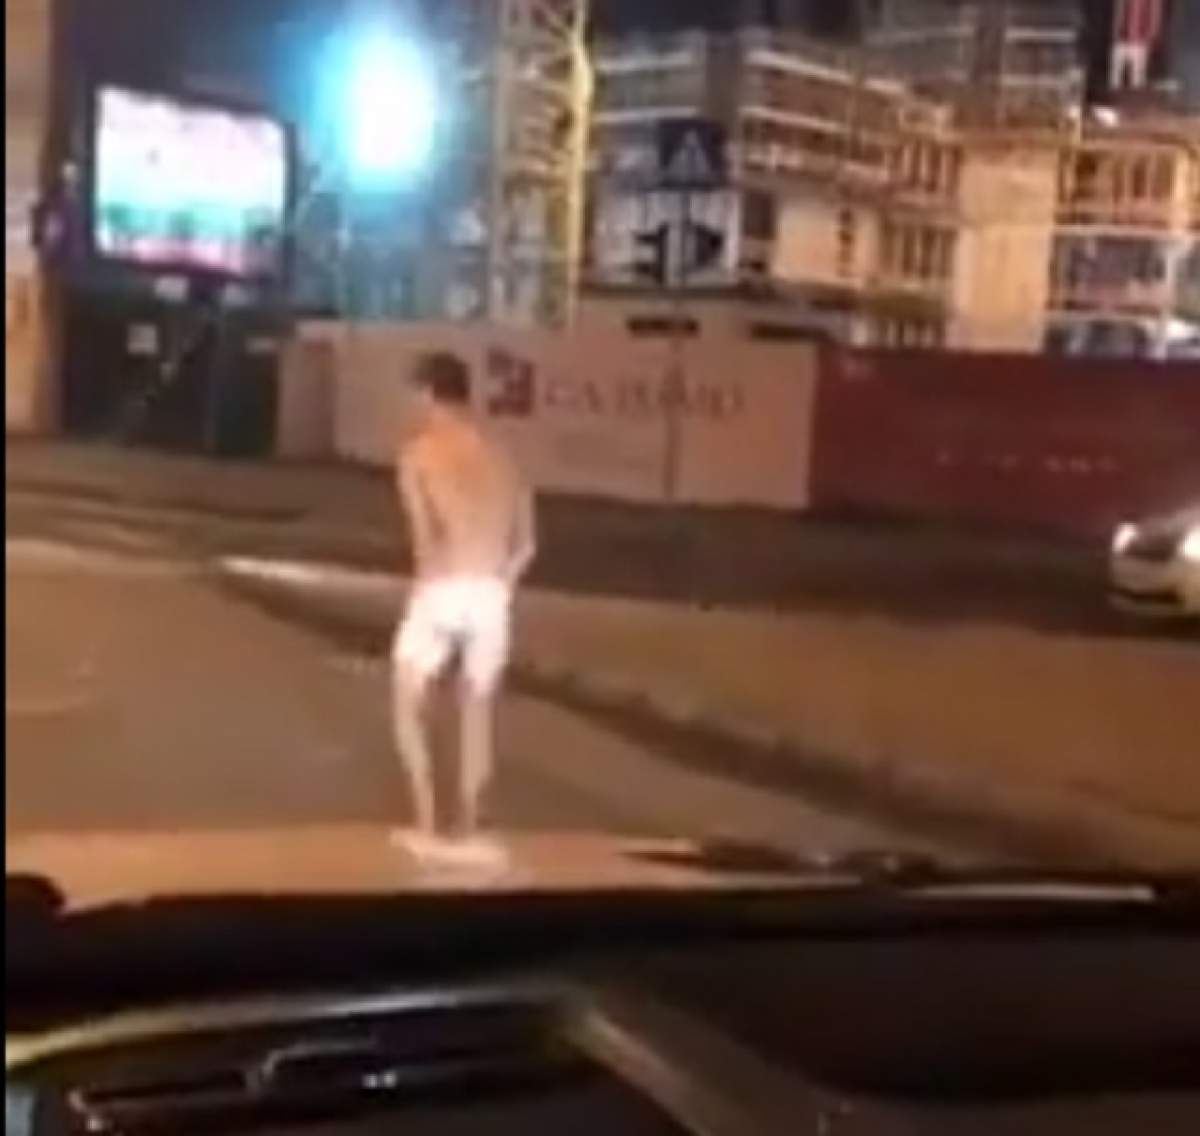 18+ / VIDEO / Apariţie şocantă în centrul Capitalei! În pielea goală, printre maşini!